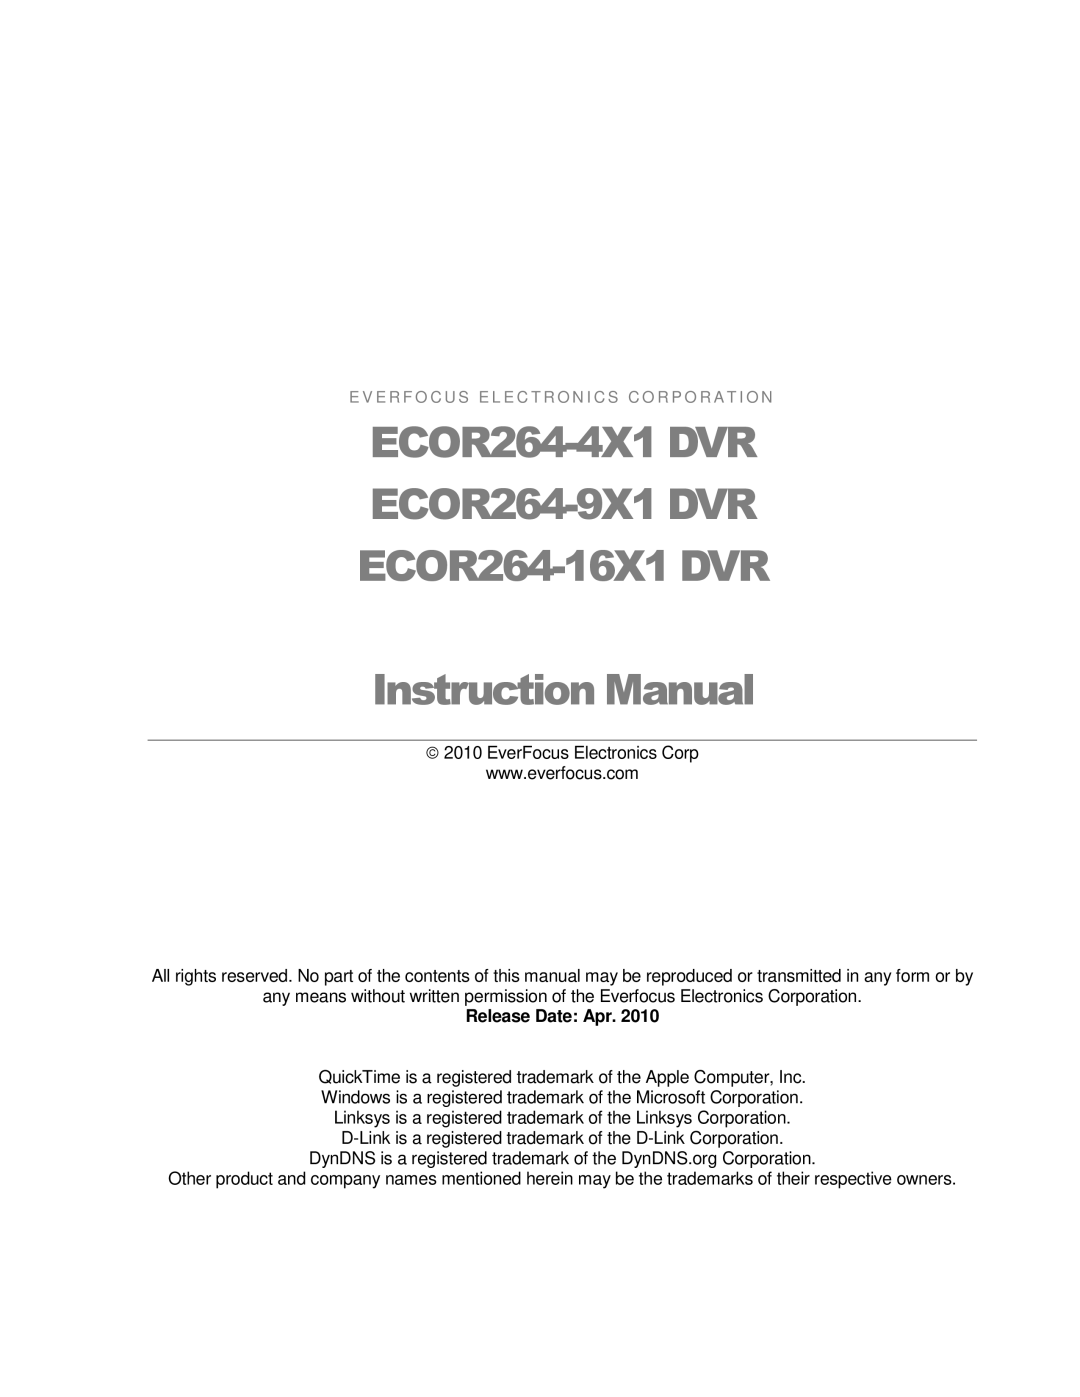 EverFocus ECOR264-16X1 user manual ECOR264-4X1 DVR ECOR264-9X1 DVR 